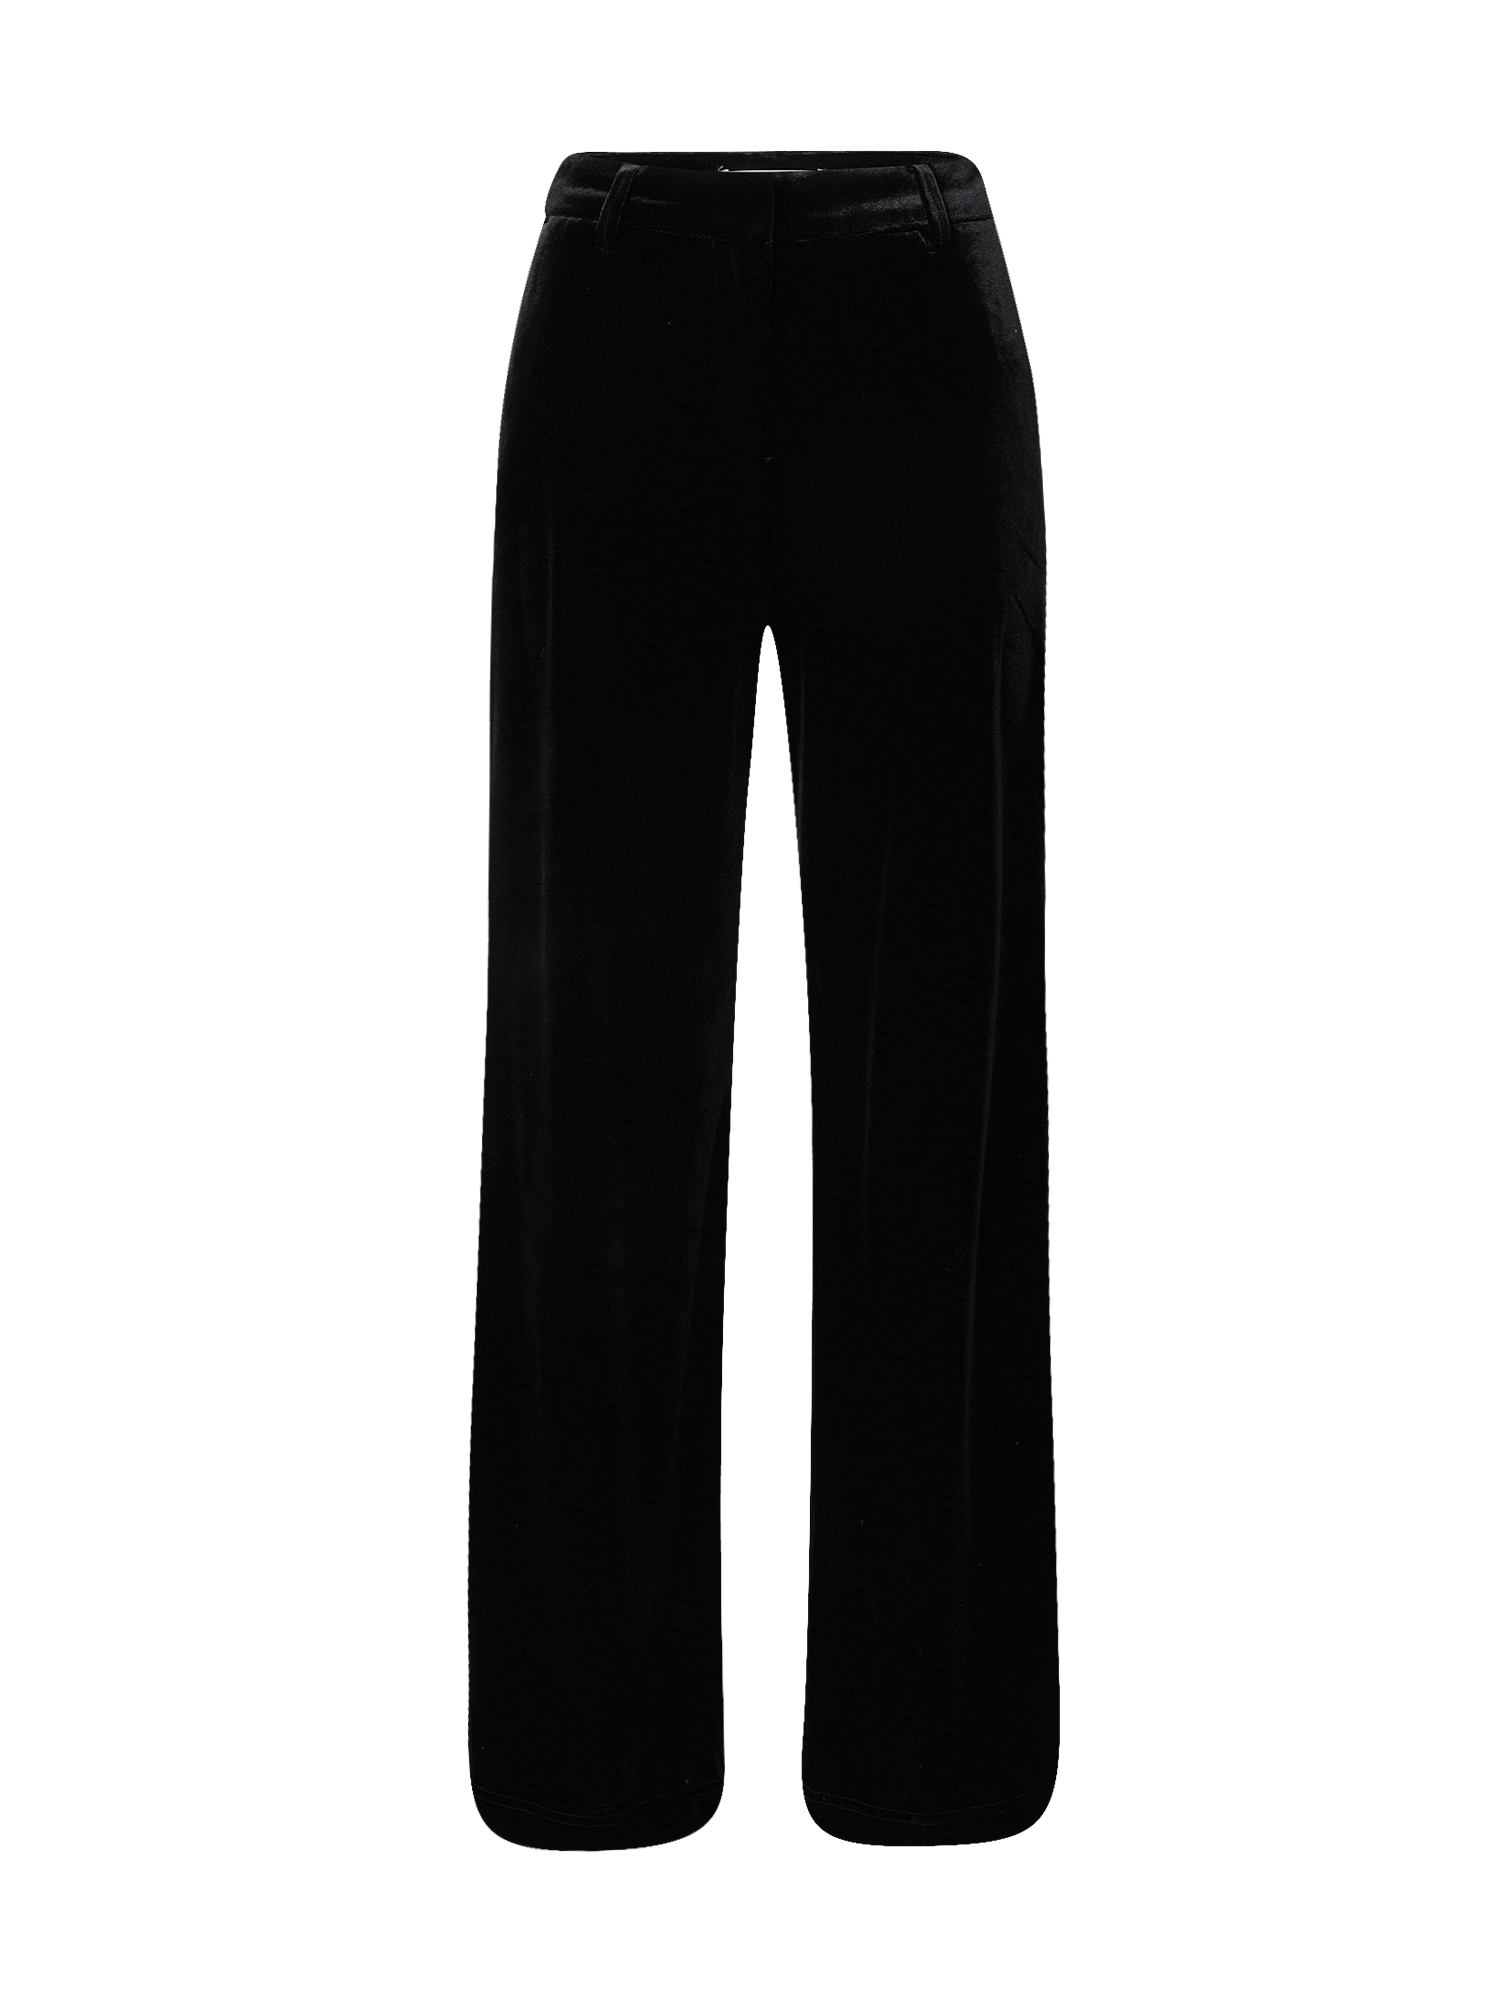 Odzież Kobiety ONLY Spodnie MARGARET w kolorze Czarnym 